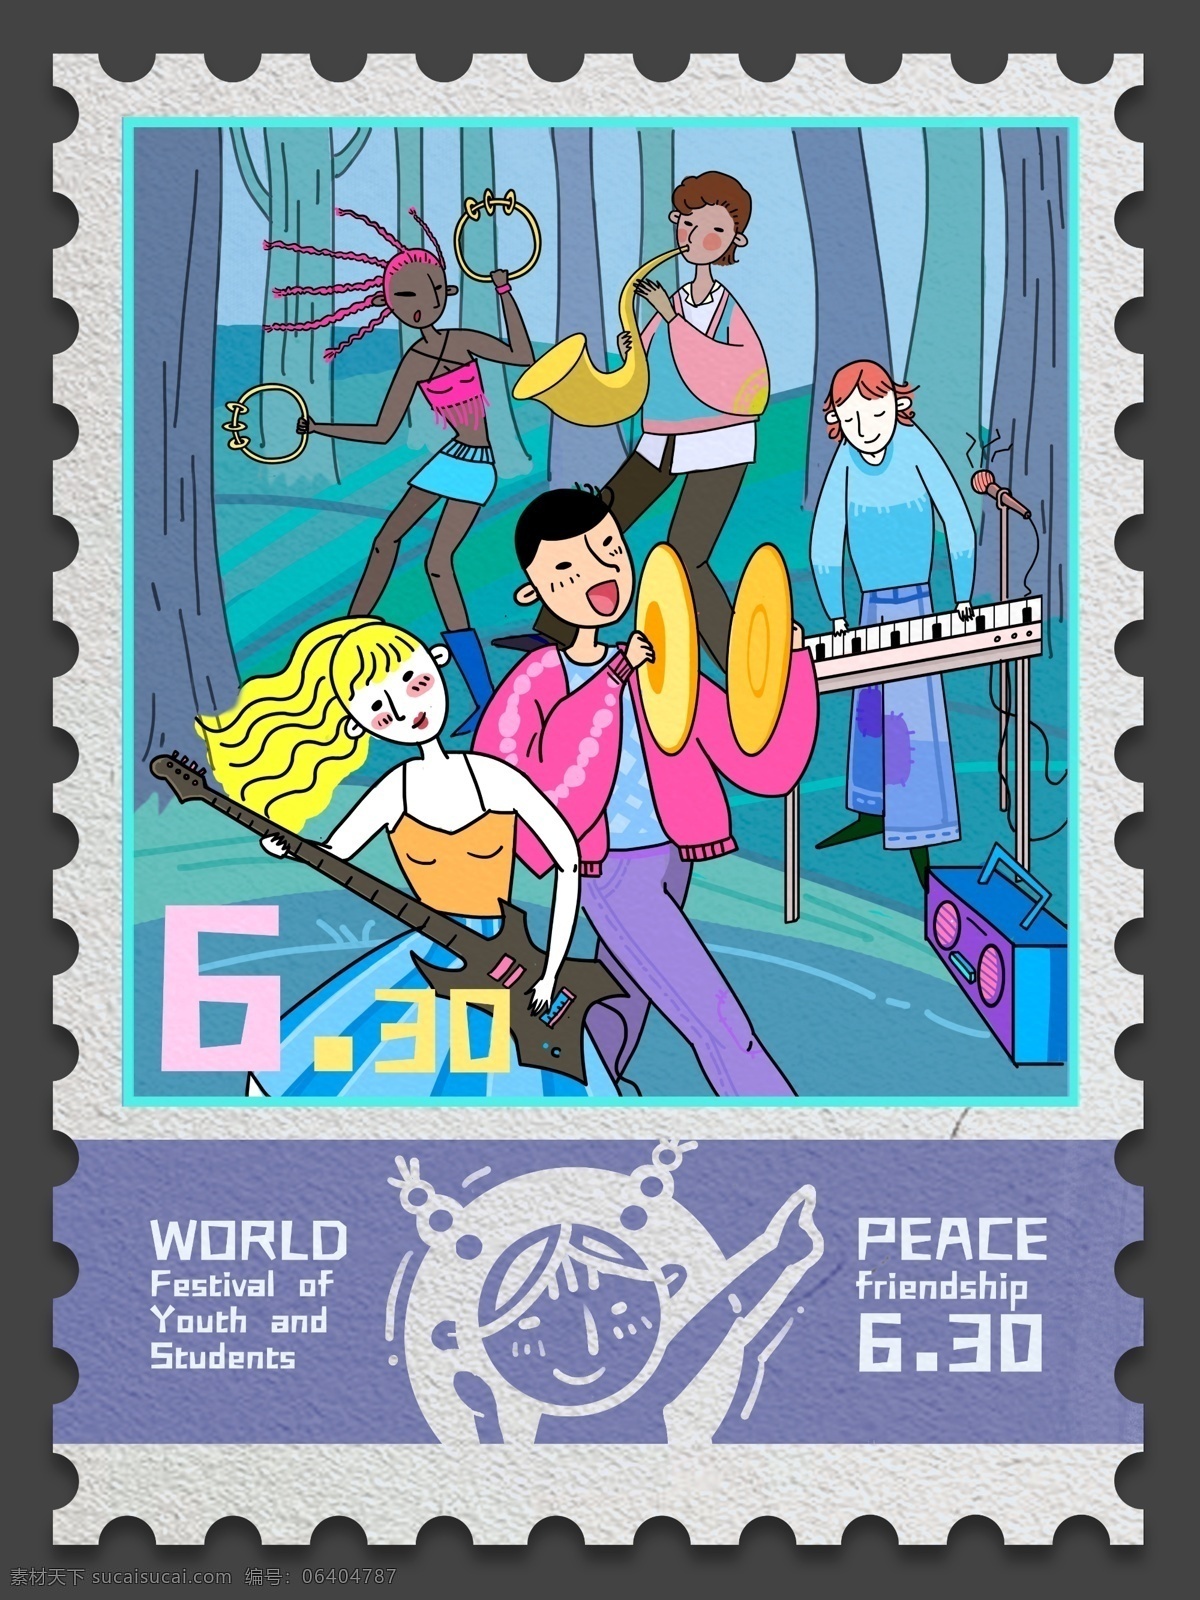 世界 青年 联欢节 邮票 创意 手绘 插画 logo 女孩 男孩 琴 乐器 大号 萨克斯 电吉他 摇铃 歌舞 跳舞 节日 六月30 年轻 狂欢 音乐 自由 和平 反战